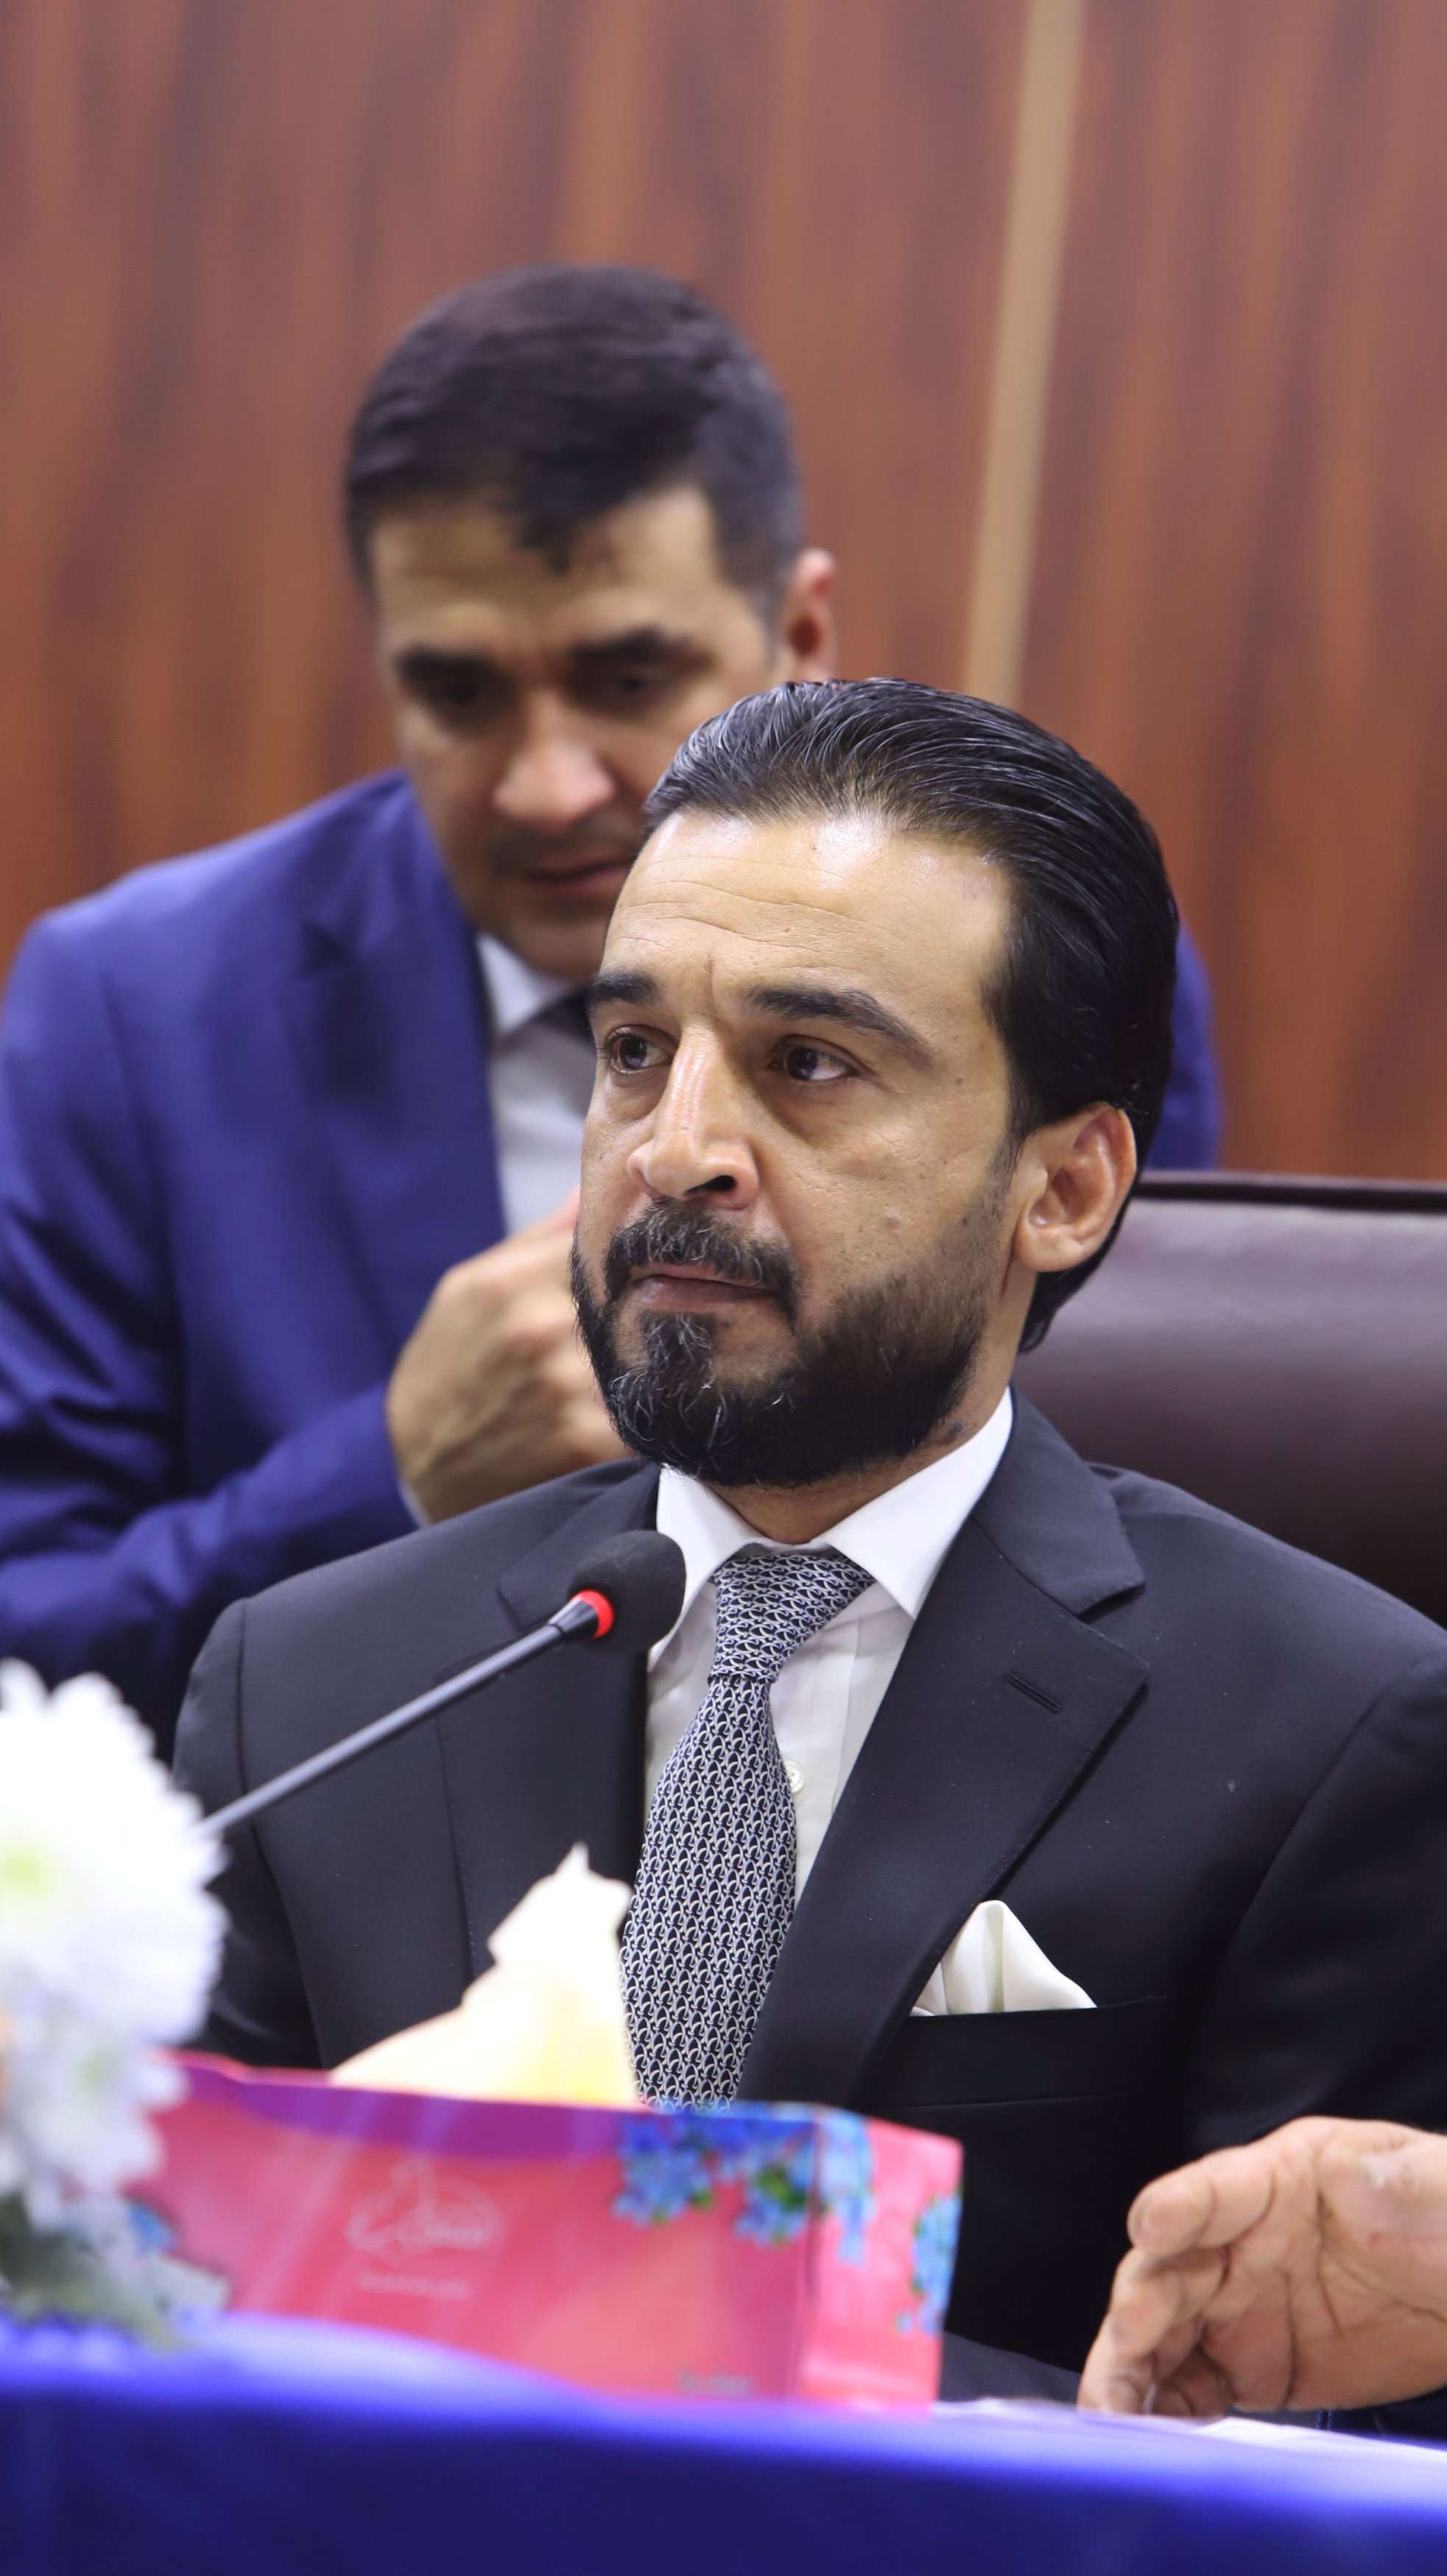 محمد الحلبوسي أصبح يمثل خطرا على مصالح شخصيات سياسية سنّية مستهلكة لدى الشارع العراقي